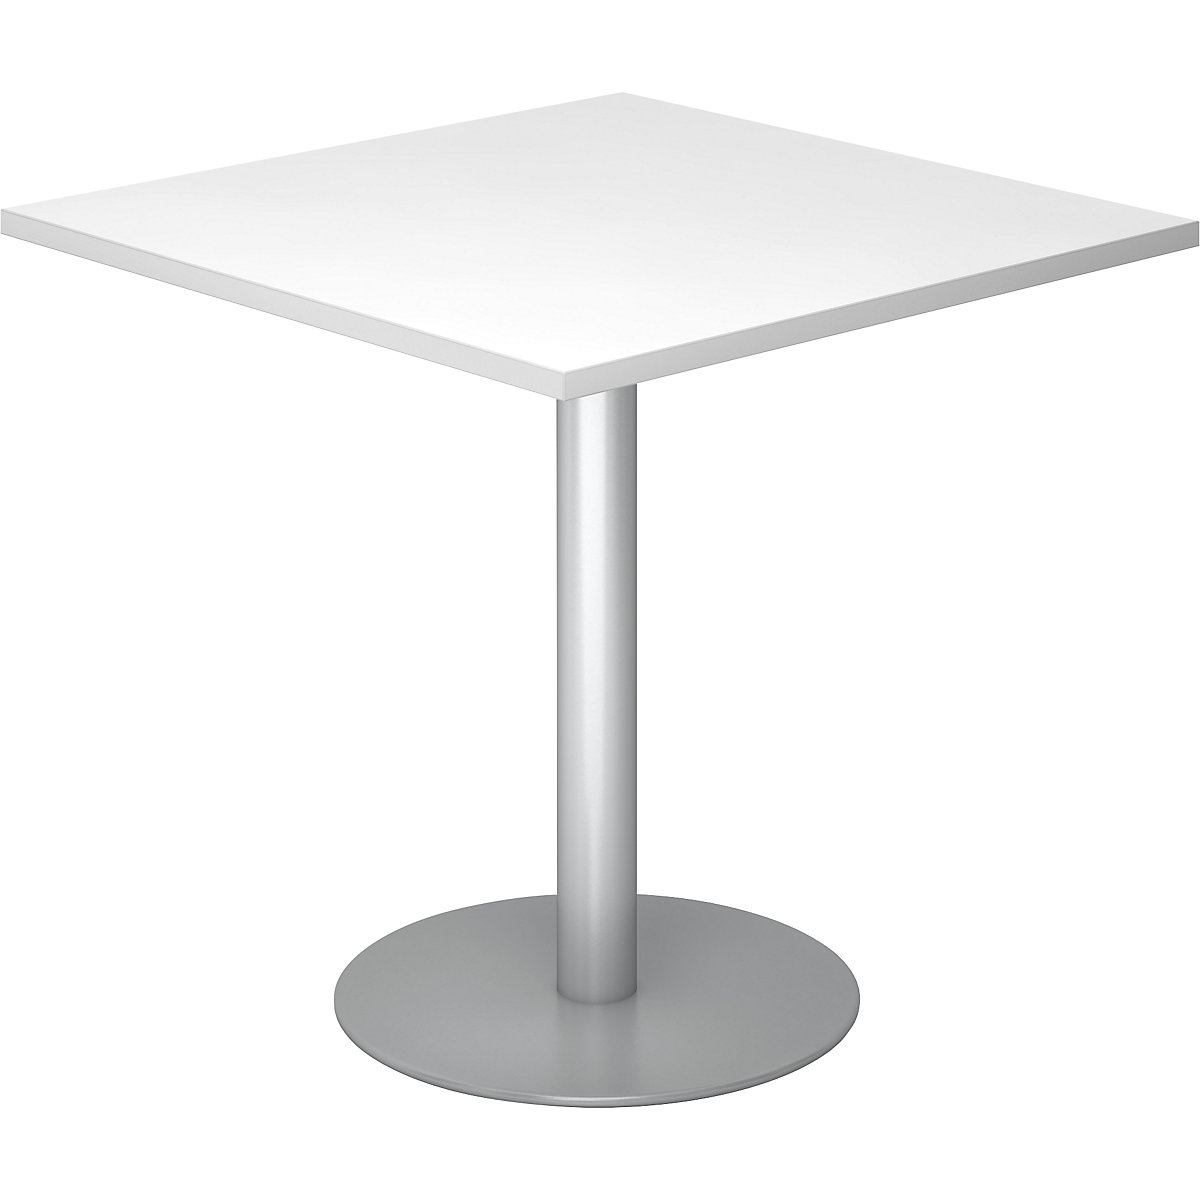 Tárgyalóasztal, h x szé 800 x 800 mm, 755 mm magas, ezüst váz, fehér asztallap